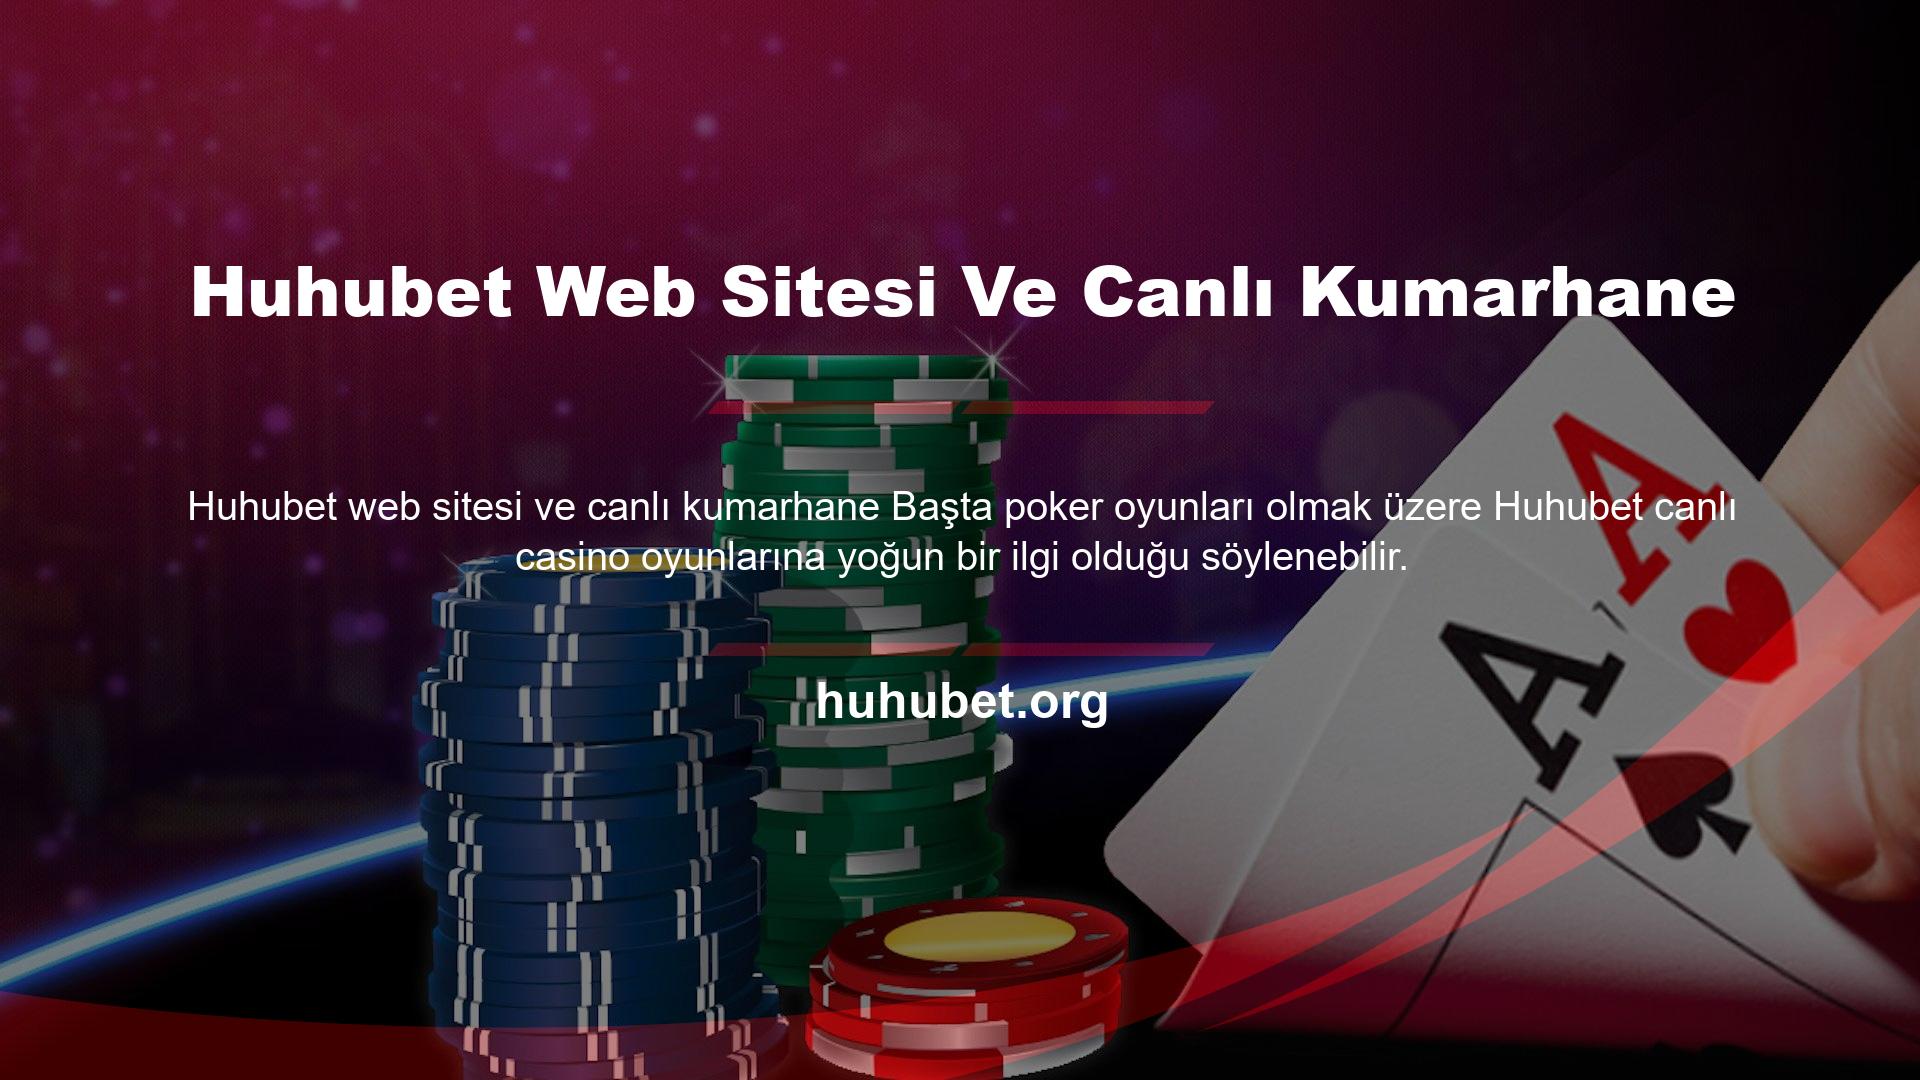 Huhubet giriş URL'sini takip ederek siteye üye olabilir ve bahis yapmaya başlayabilirsiniz! Sitede Huhubet Poker dahil pek çok canlı casino oyunu türü sizleri bekliyor!

Pokerin kazanmak için oynayabileceğiniz basit ve çok eğlenceli bir oyun olduğunu söyleyebilirsiniz